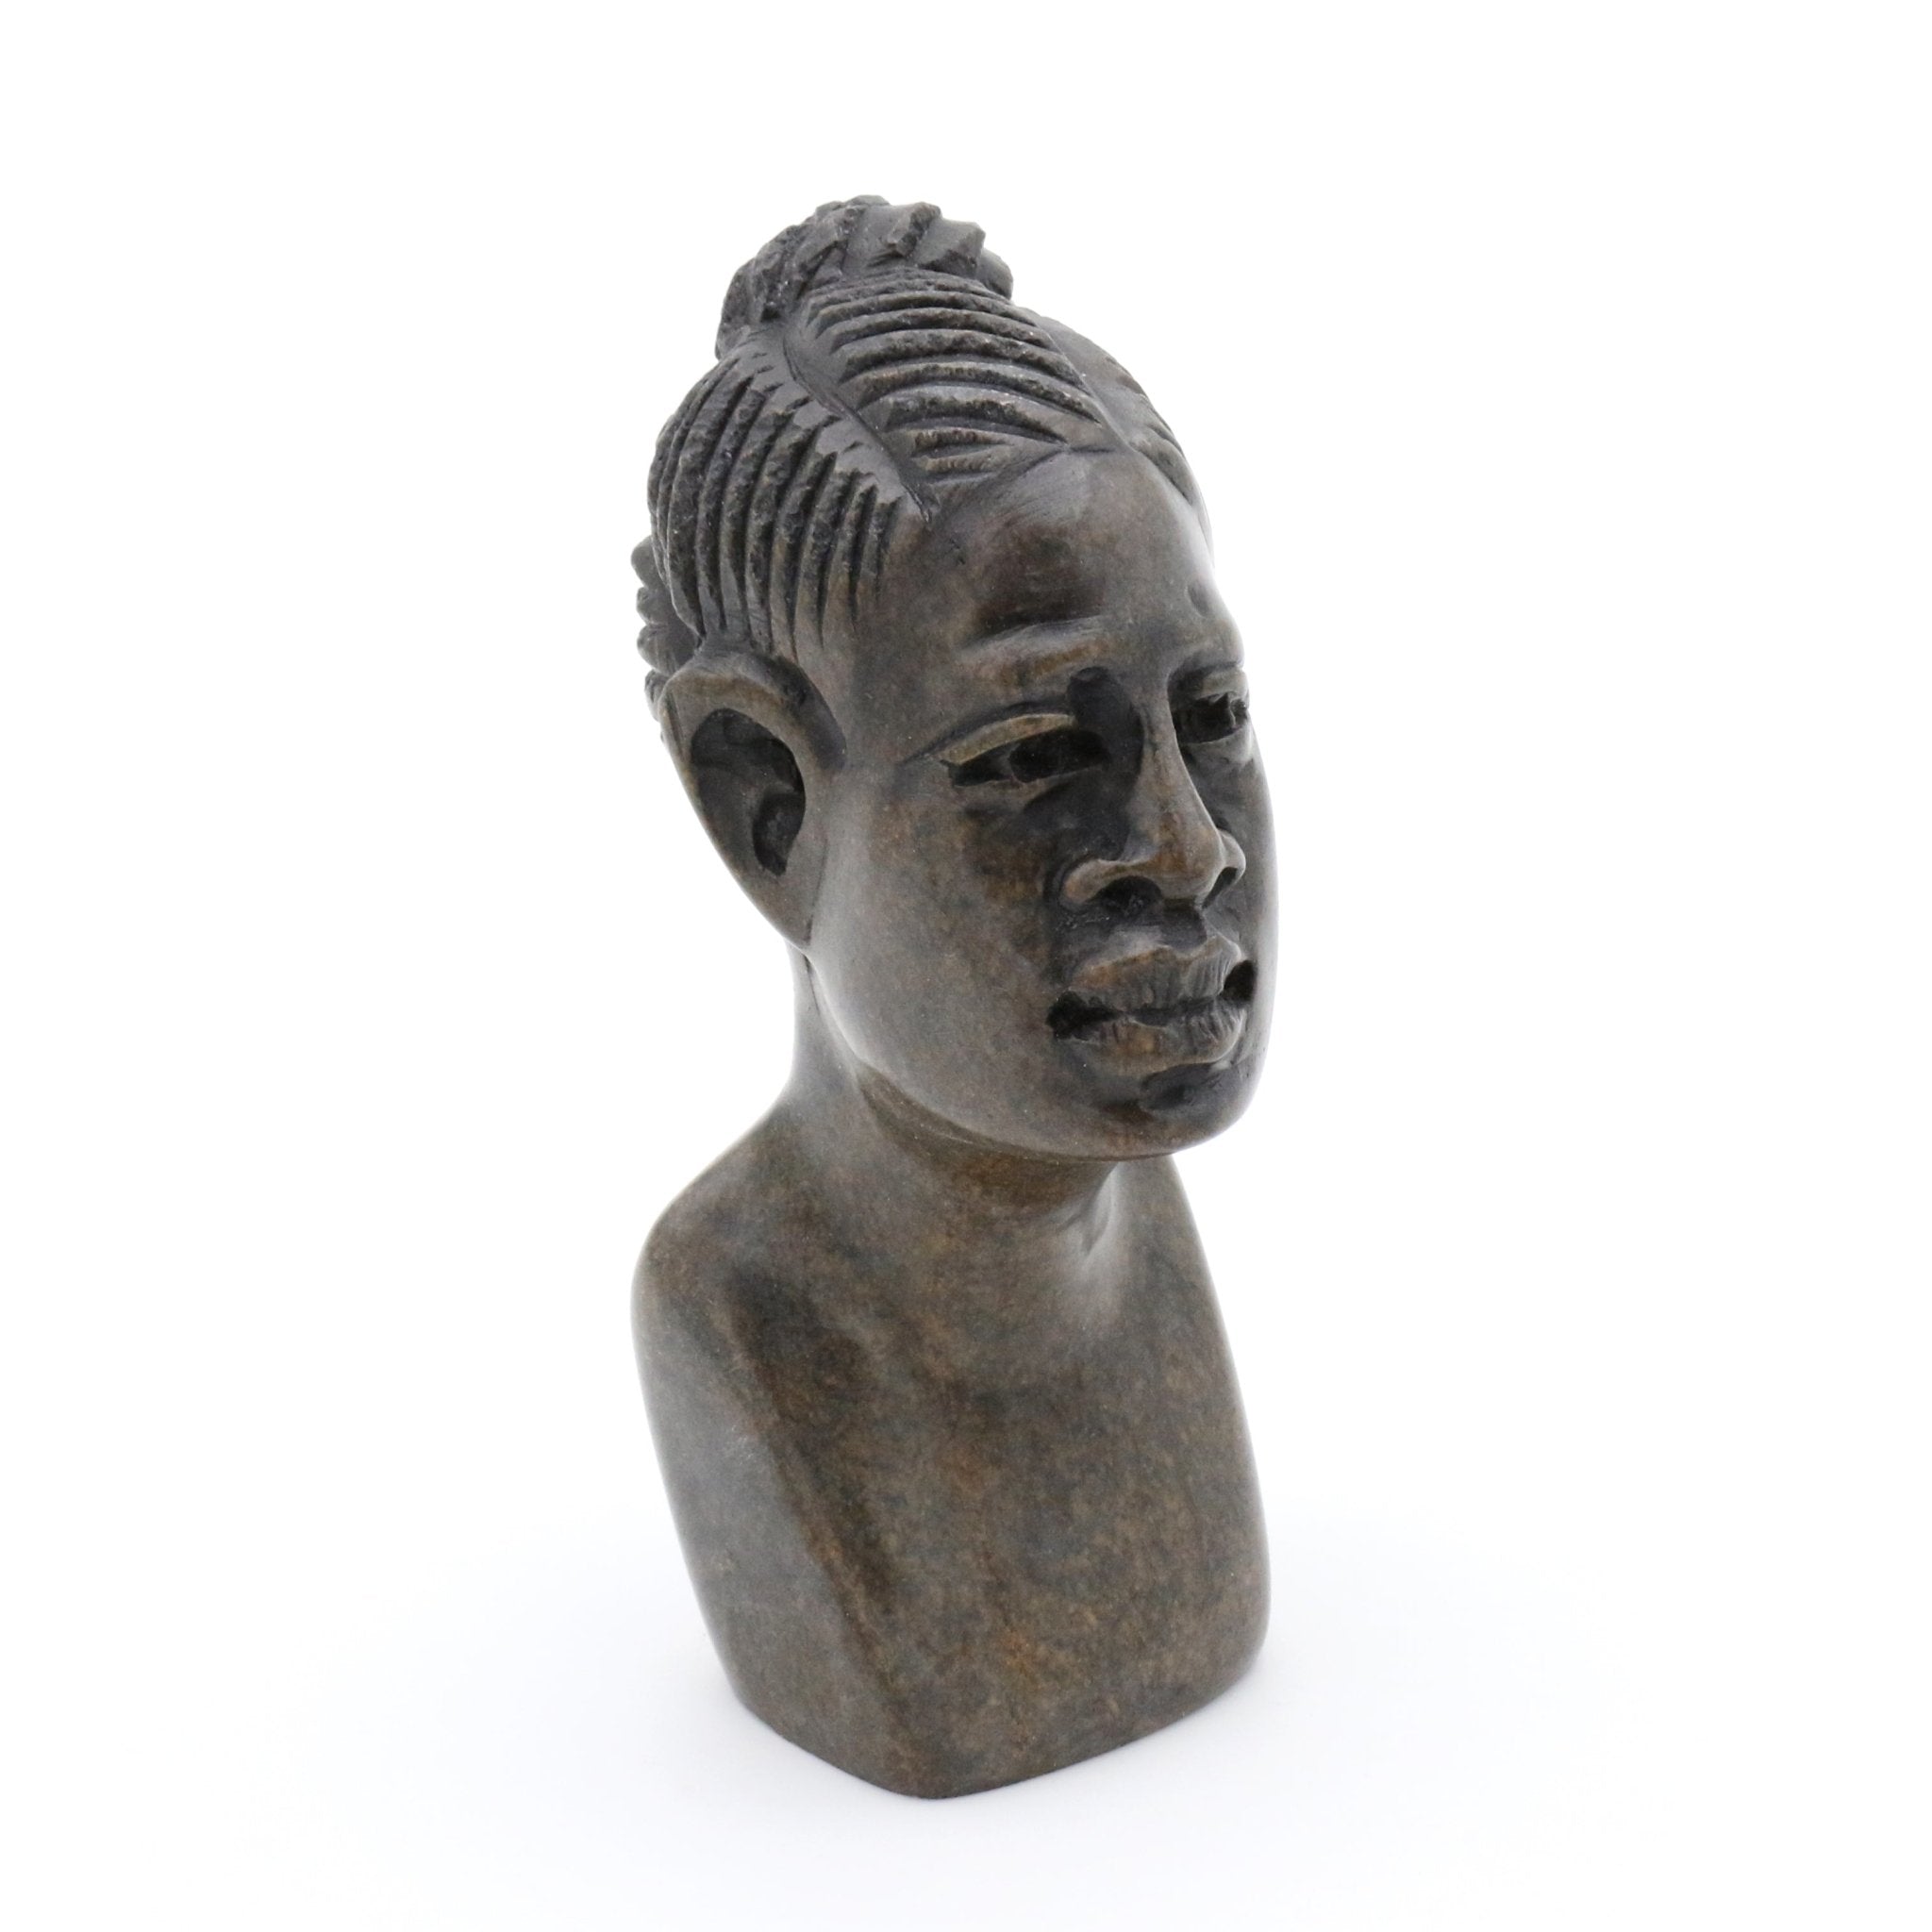 Obert Fidze - Portrait einer afrikanischen Frau - Shona-Art Shop - Kunst Skulptur aus Stein, dekorativ für den Aussenbereich und Interior